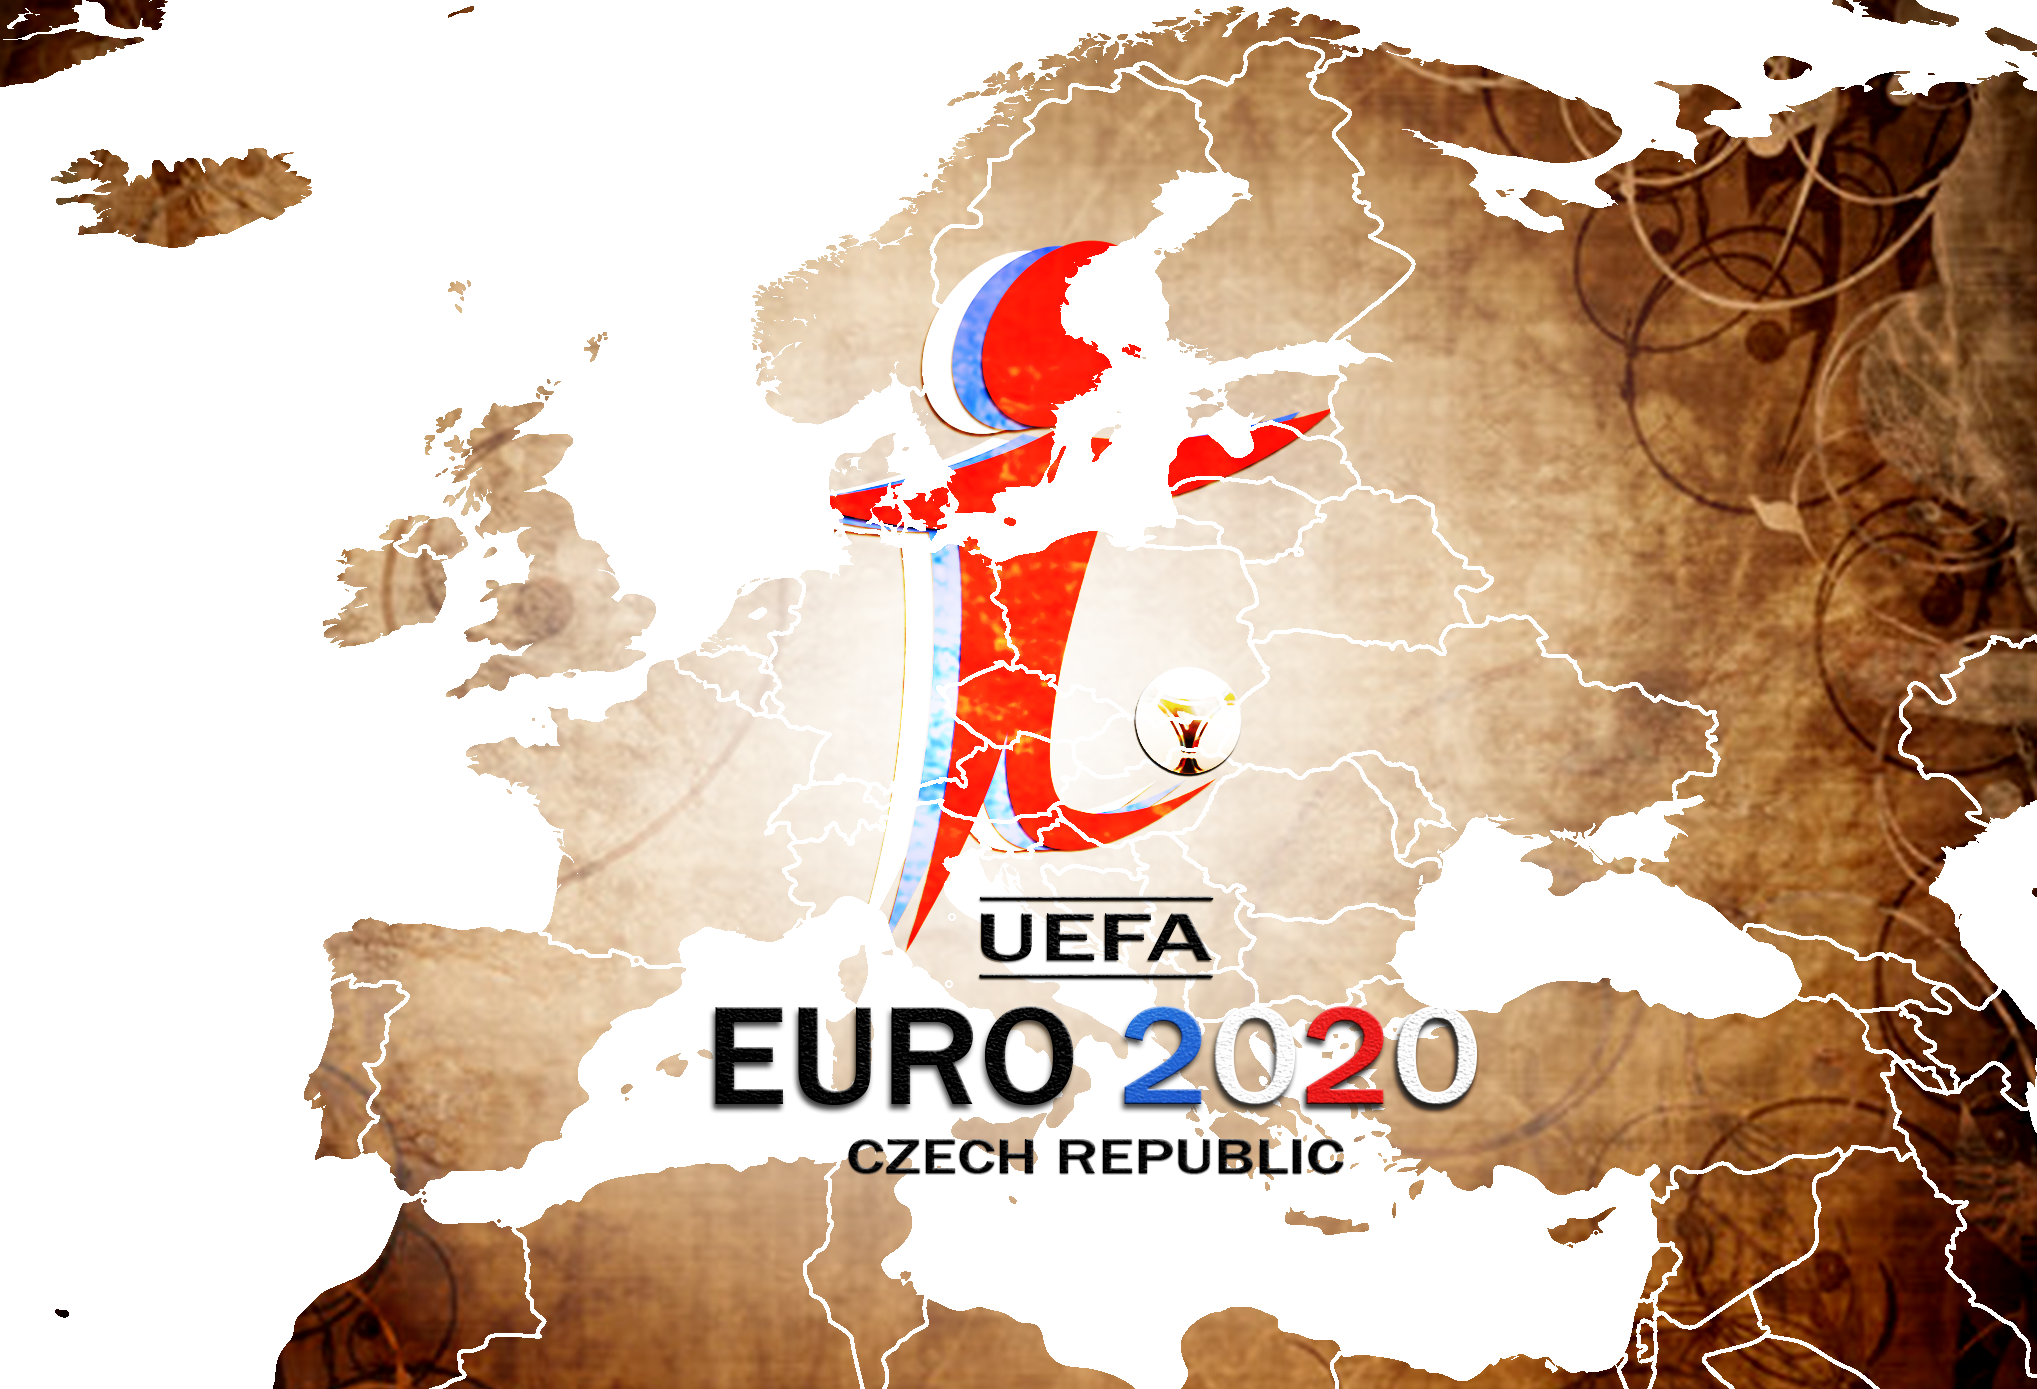 EURO 2020 in CZE